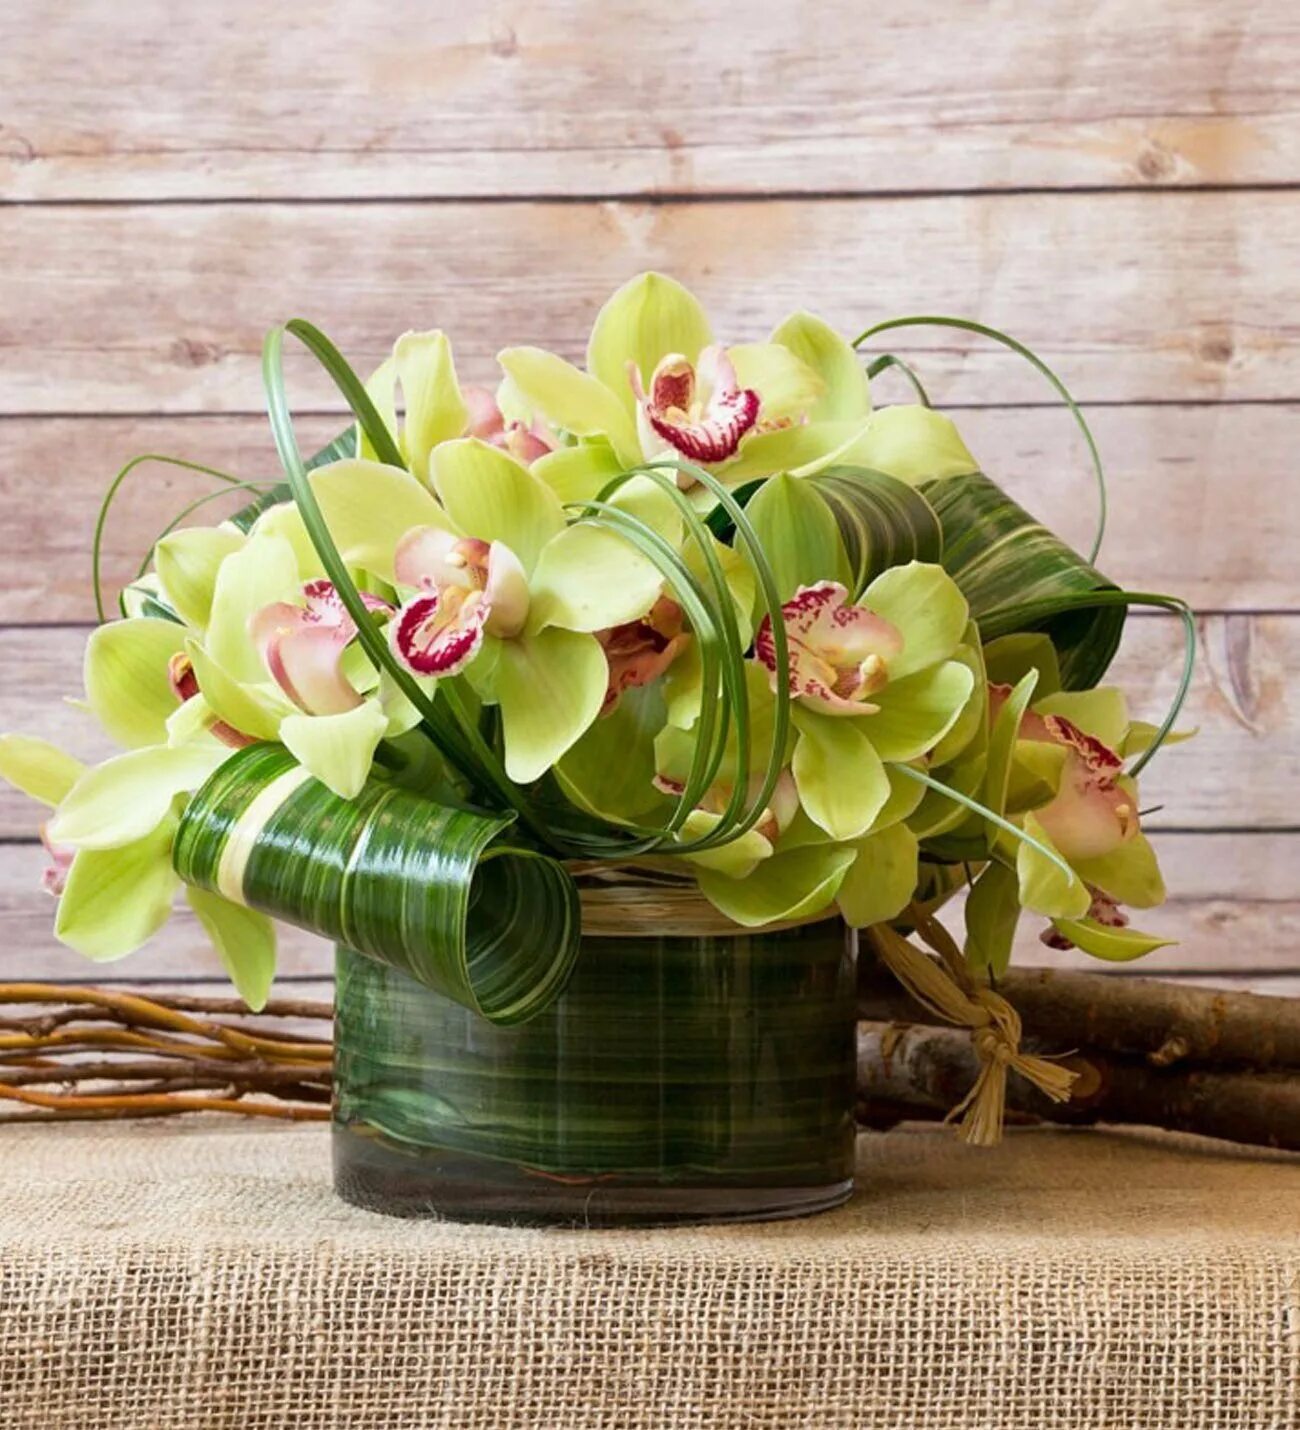 Орхидея Цимбидиум зеленая. Букет с орхидеей Цимбидиум. Фаленопсис Лемонграсс. Орхидея Цимбидиум зеленая в букете.